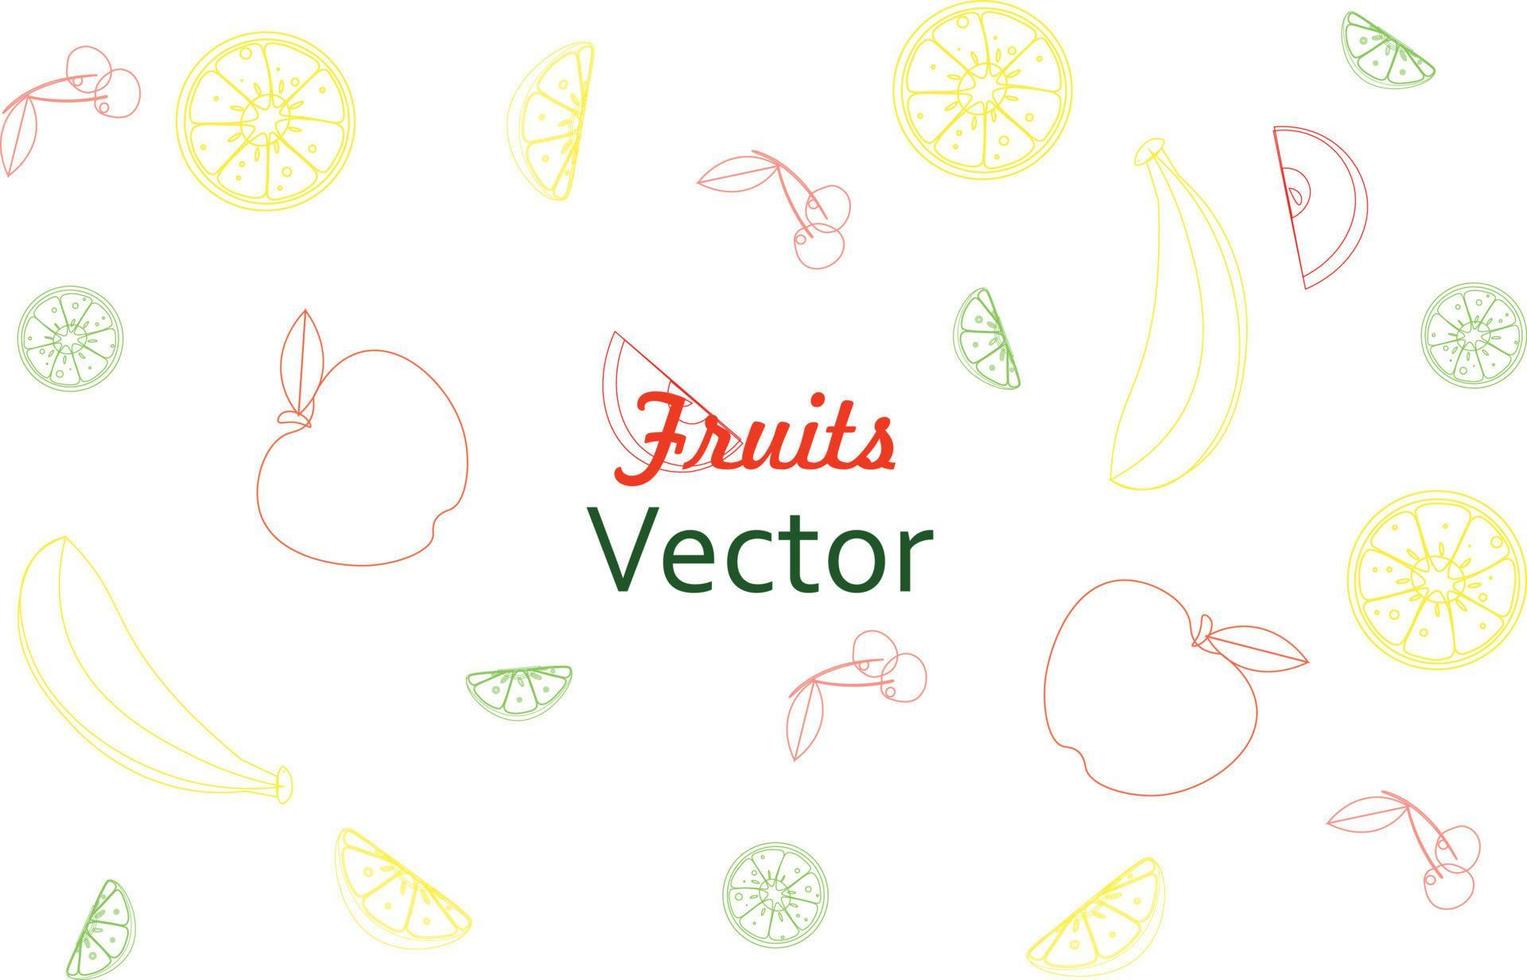 rabiscar frutas. frutas tropicais naturais, rabiscos laranja cítrica e vitamina limão vetor